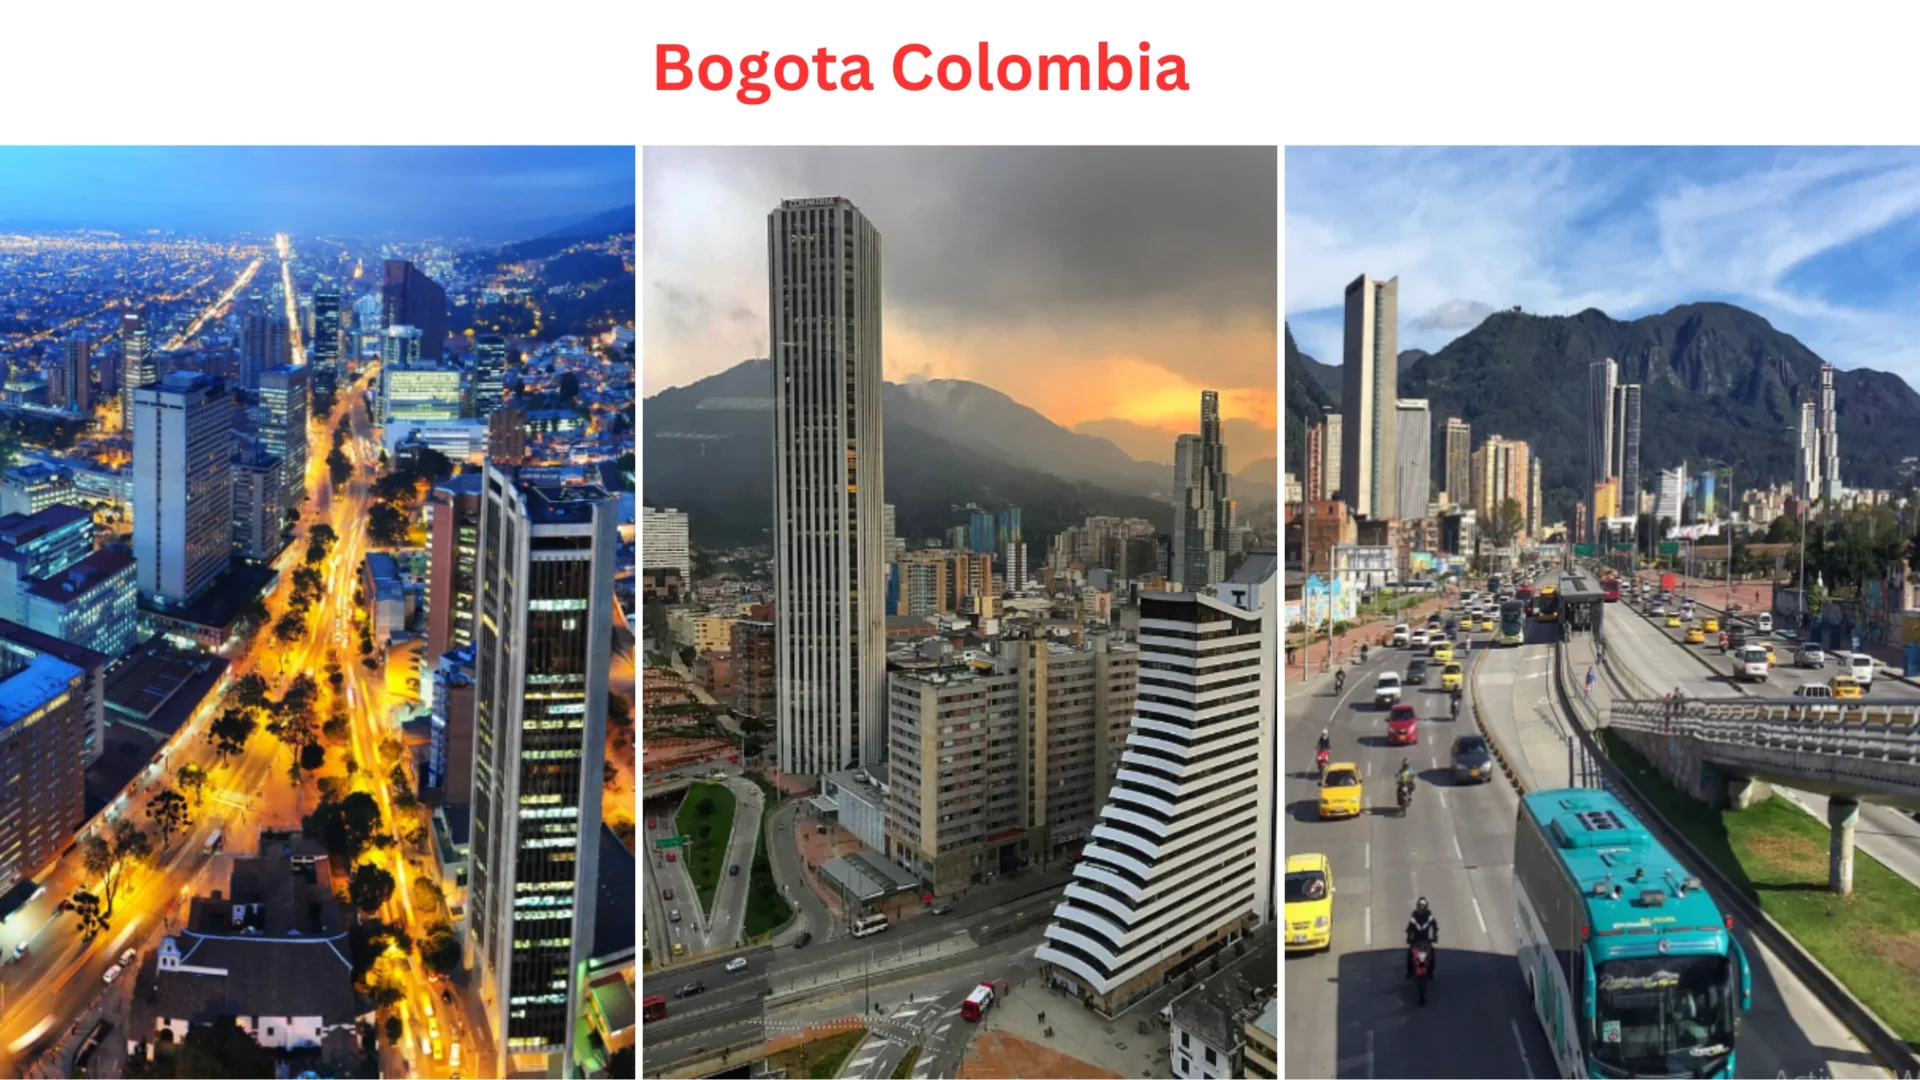 Solo Travel Destination: Bogota, Colombia